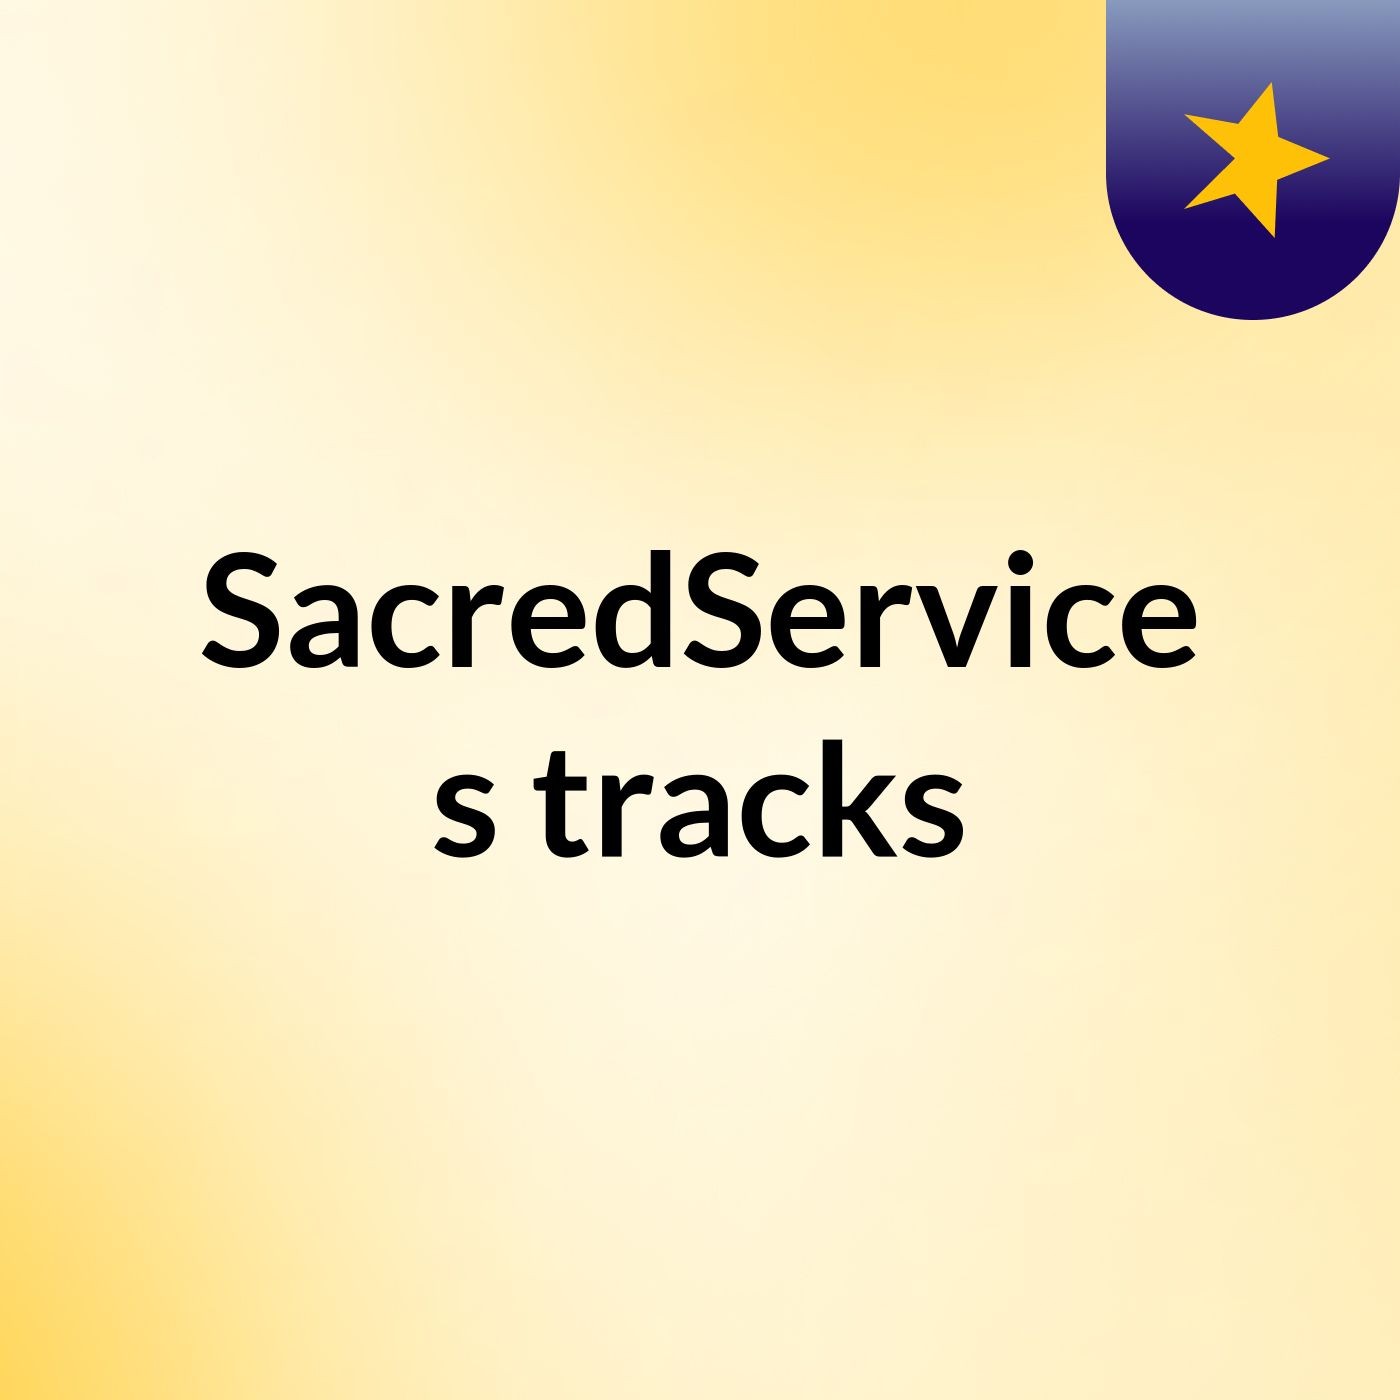 SacredService's tracks